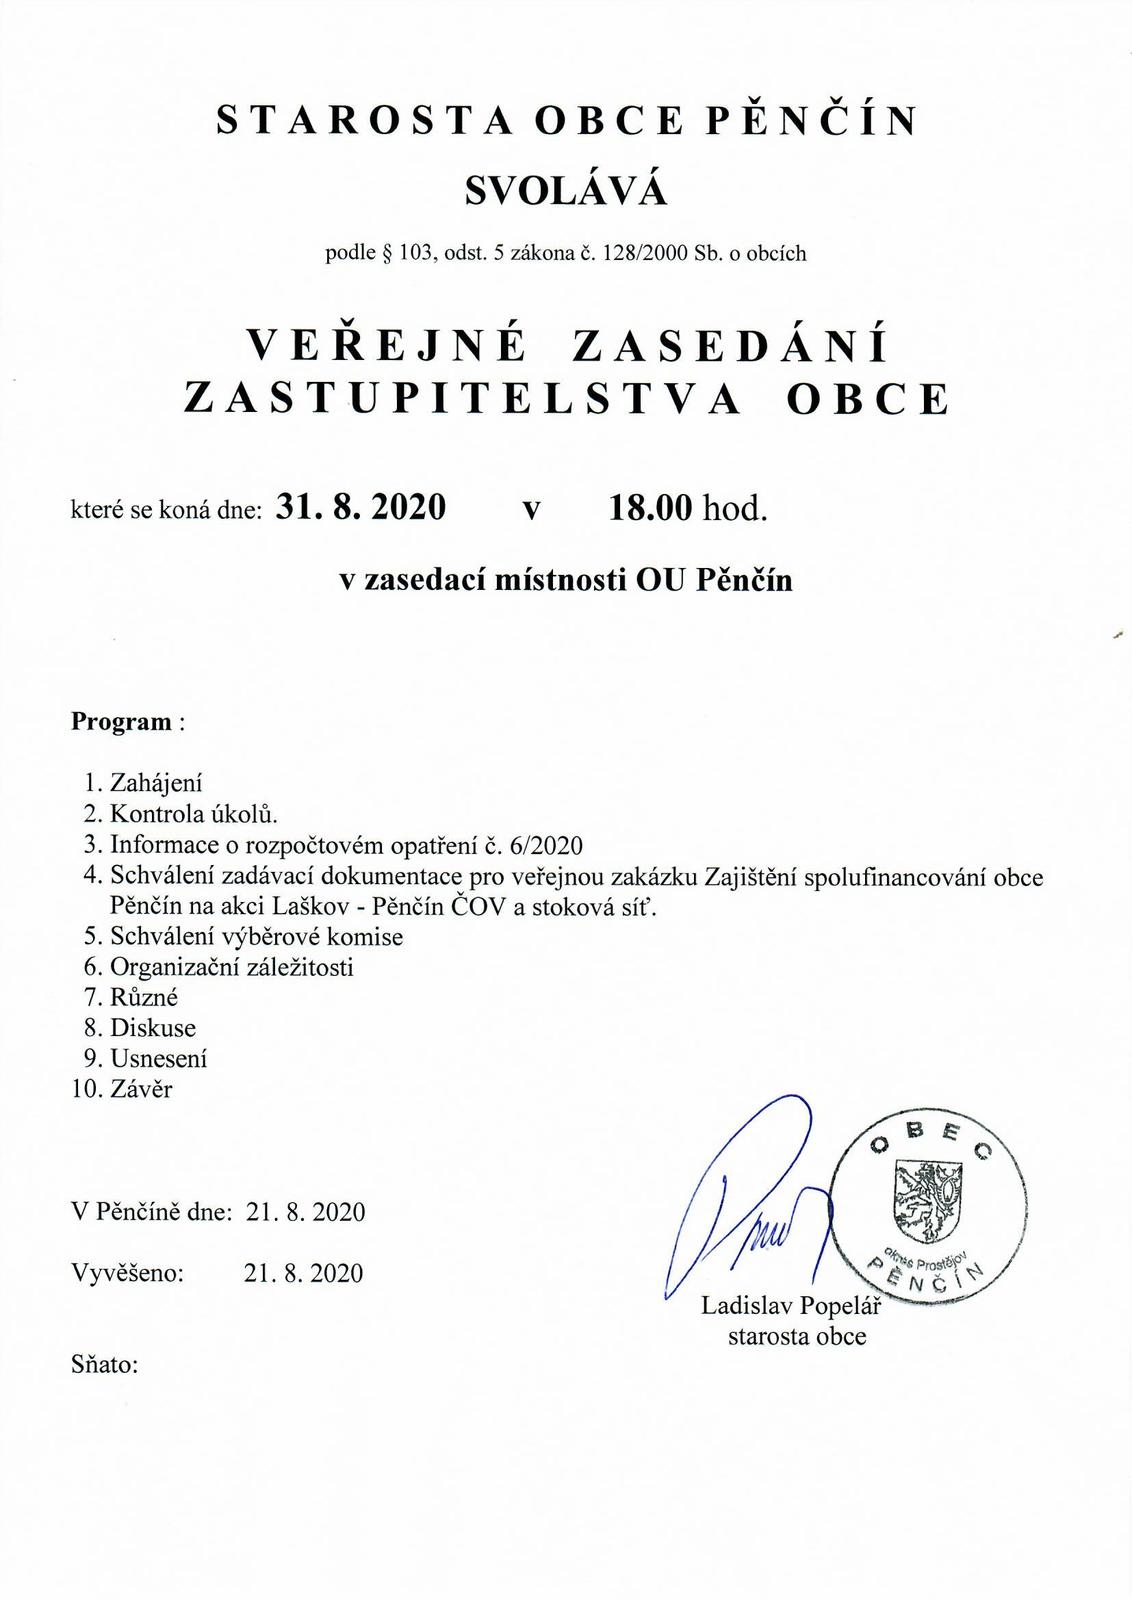 Pozvánka na veřejné zasedání ZO Pěnčín 31. 8. 2020.jpg